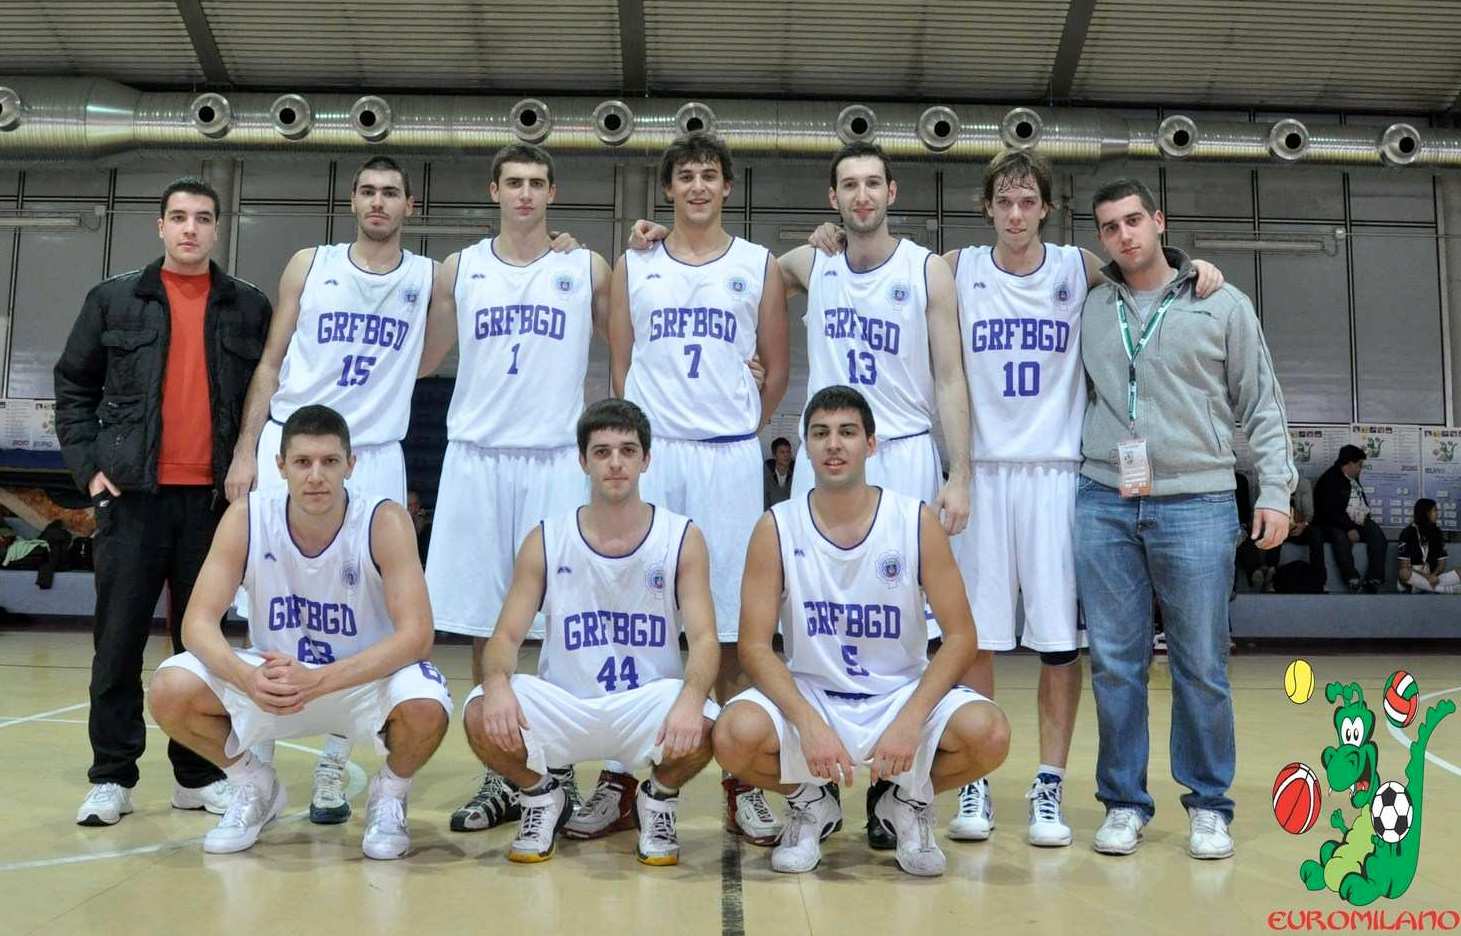 Кошаркашка екипа на турниру у Милану, 2010.